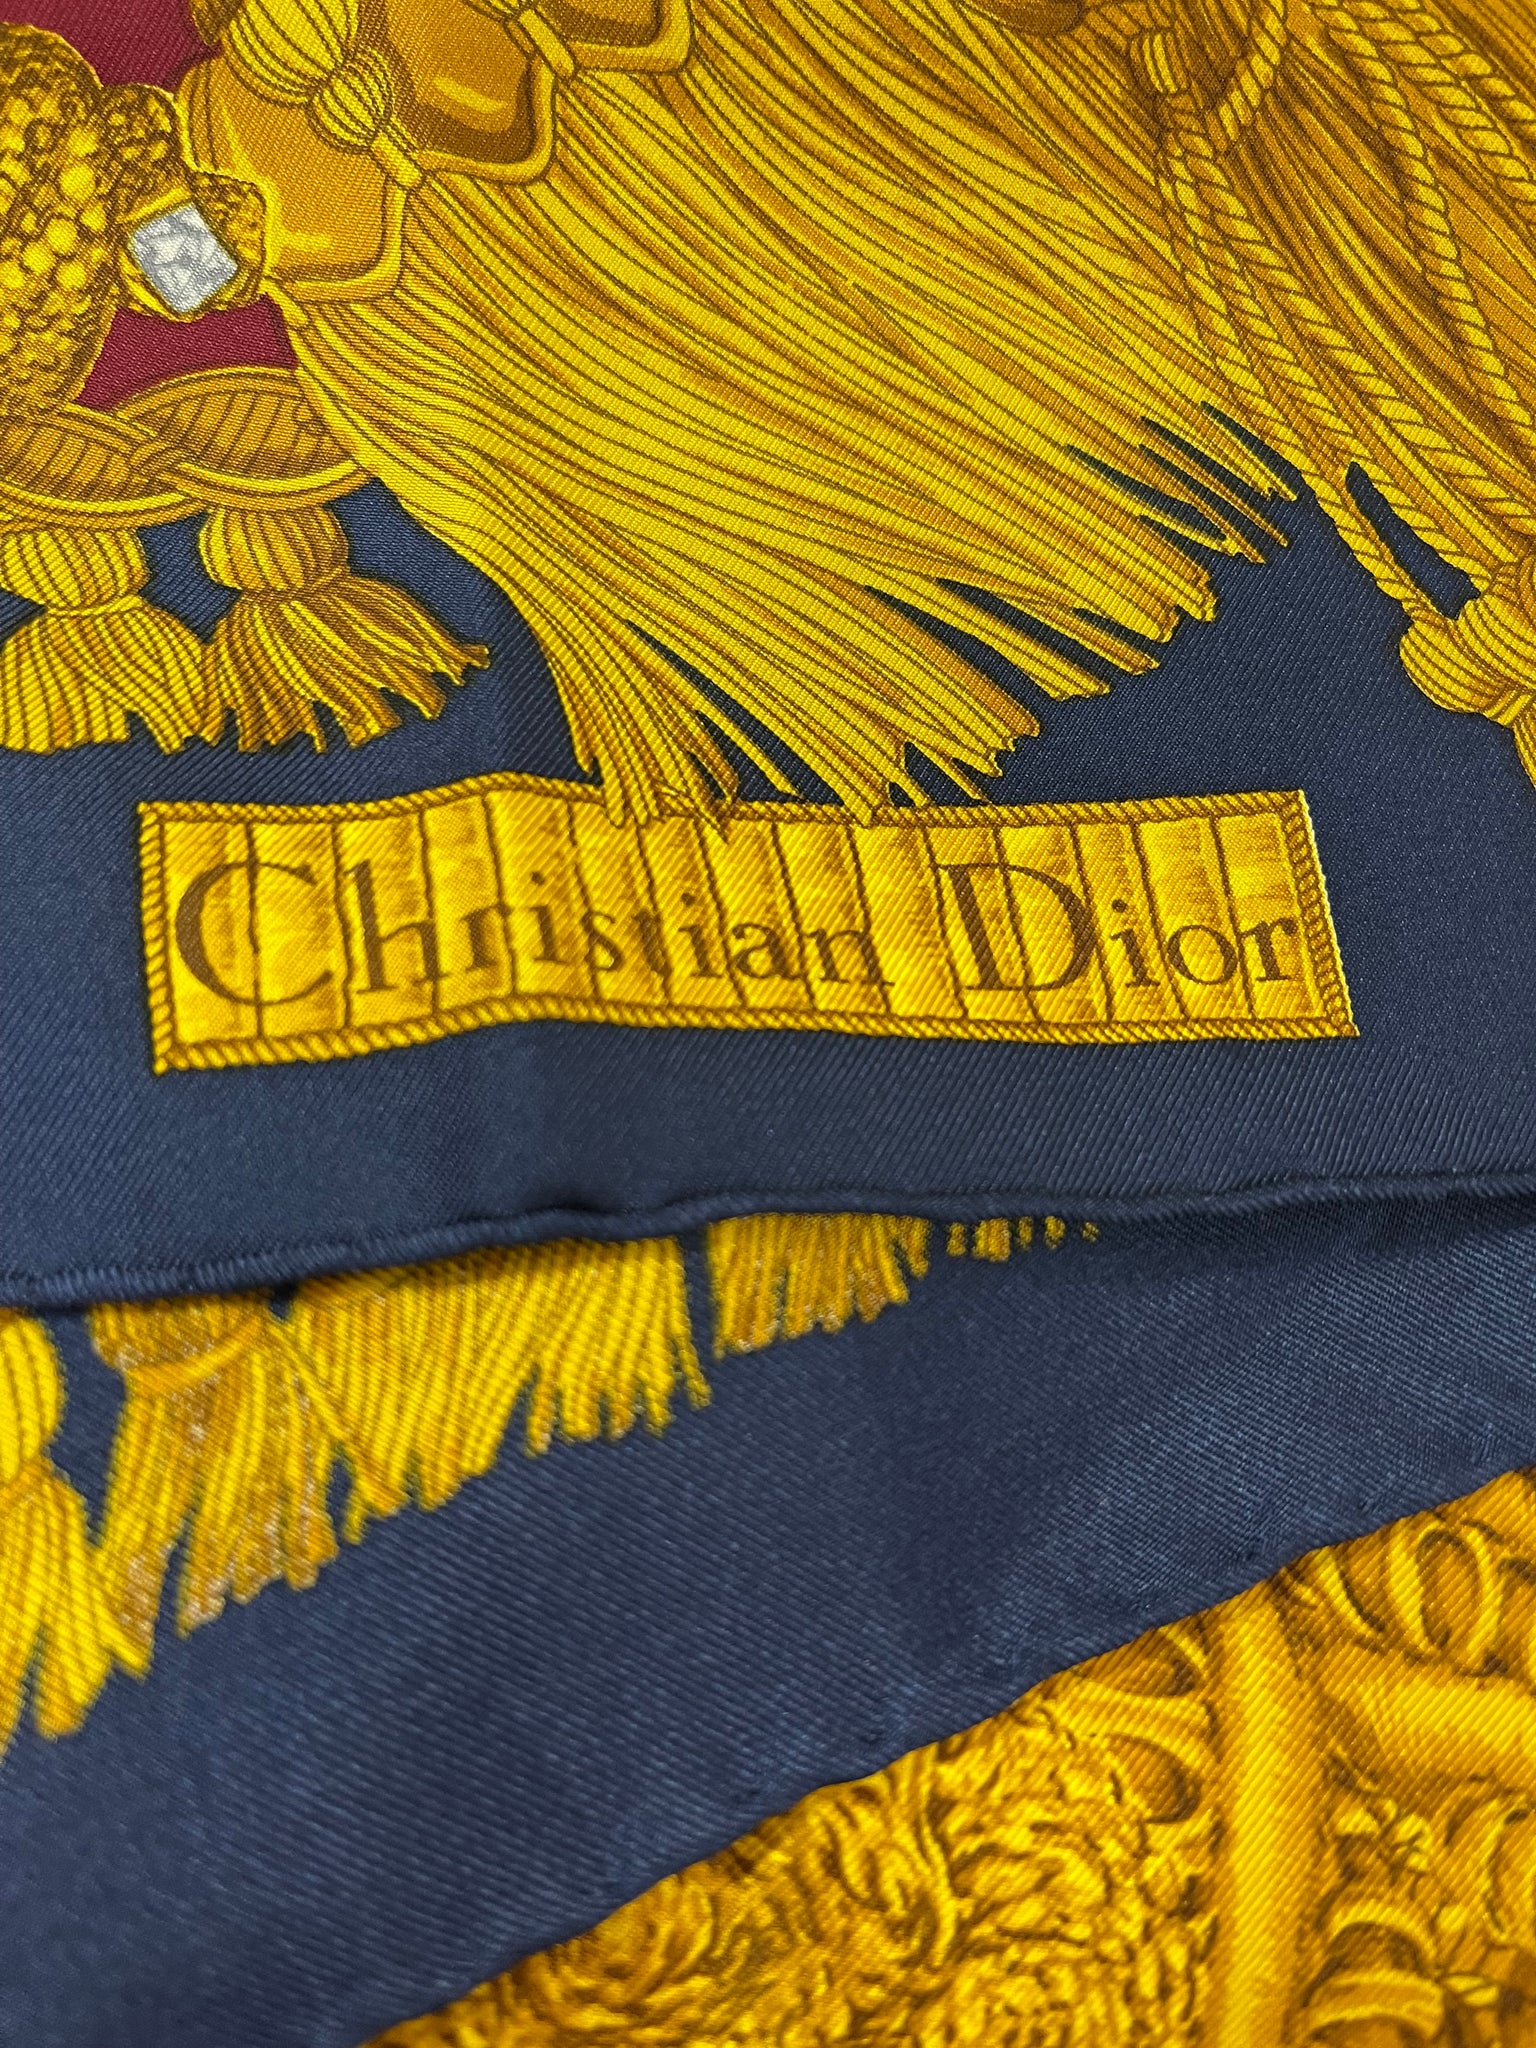 Christian Dior Silk Printed Scarf